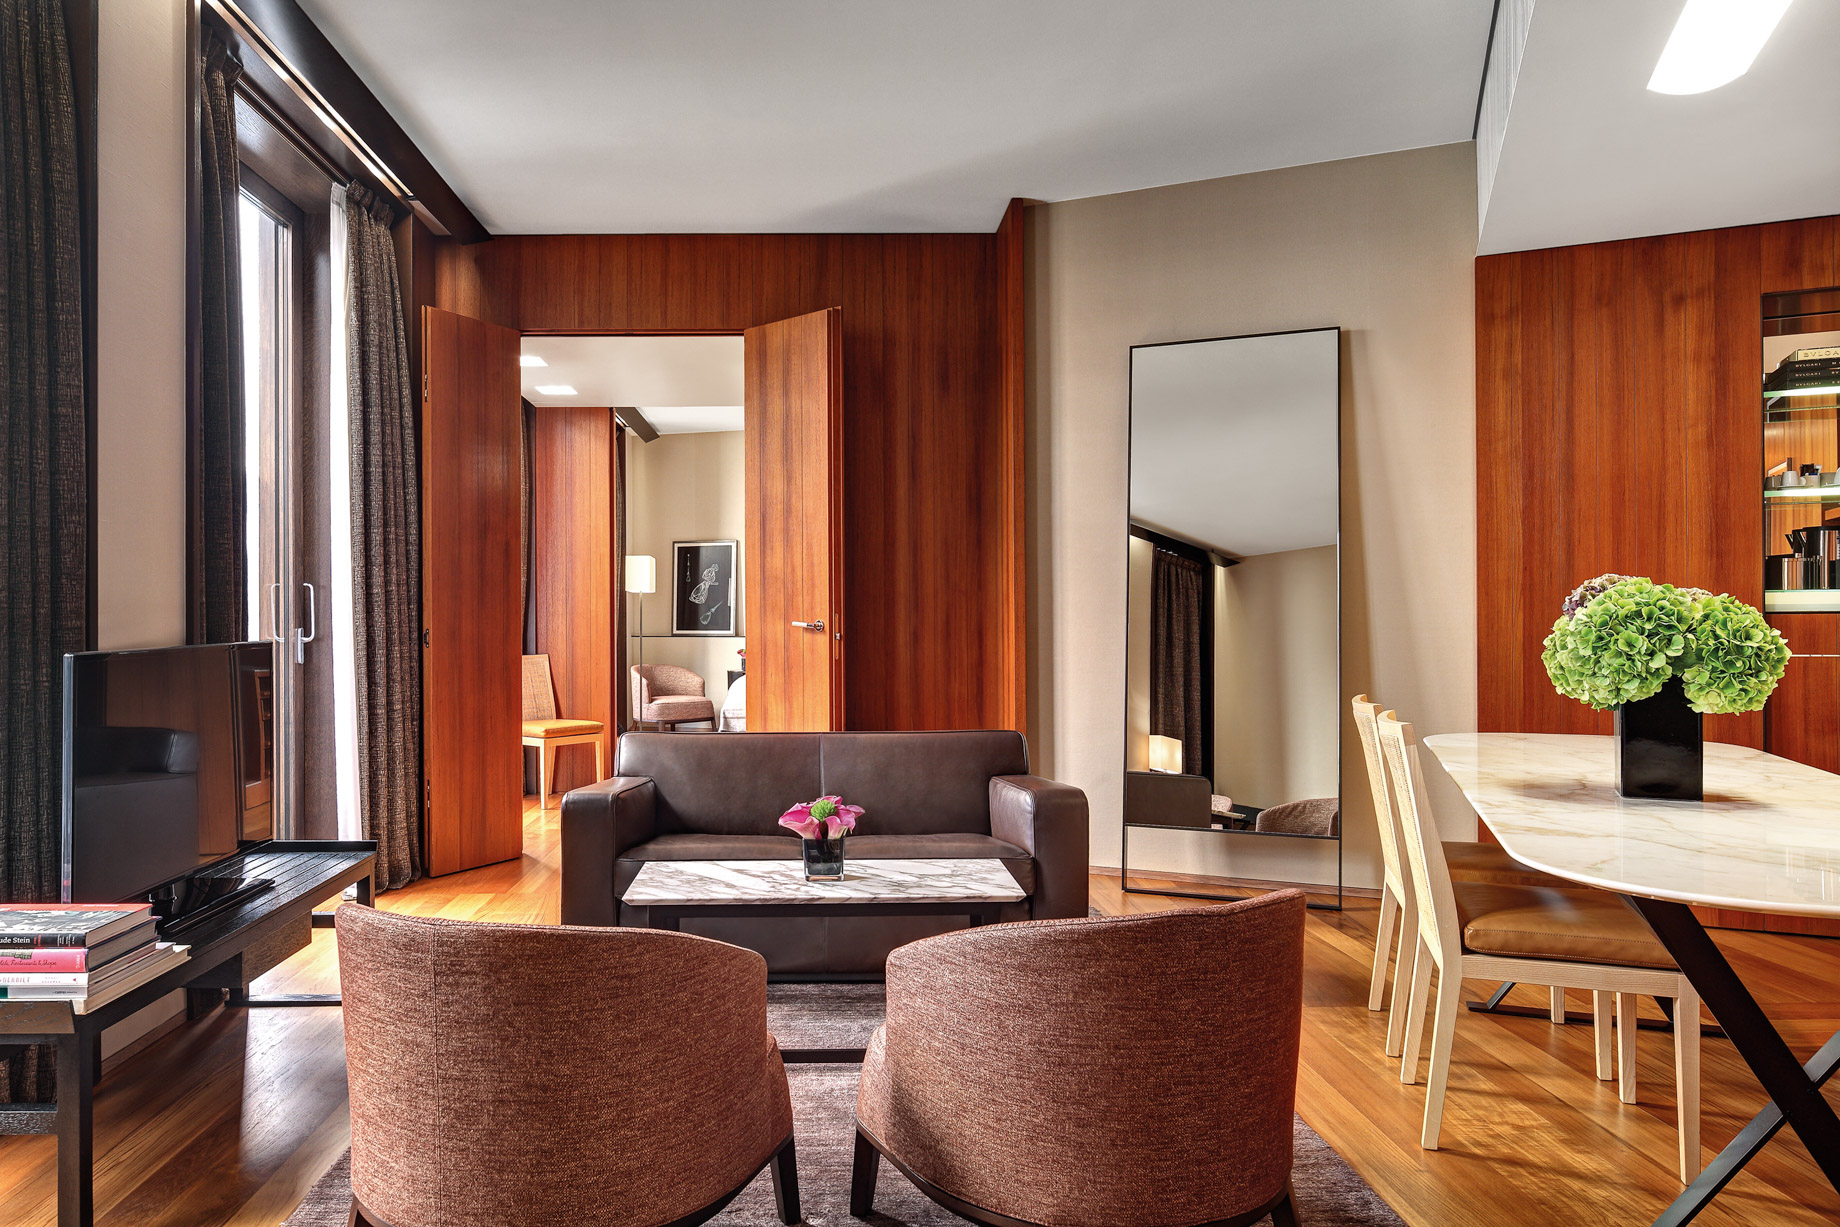 Bvlgari Hotel Milano – Milan, Italy – Premium Suite Living Room